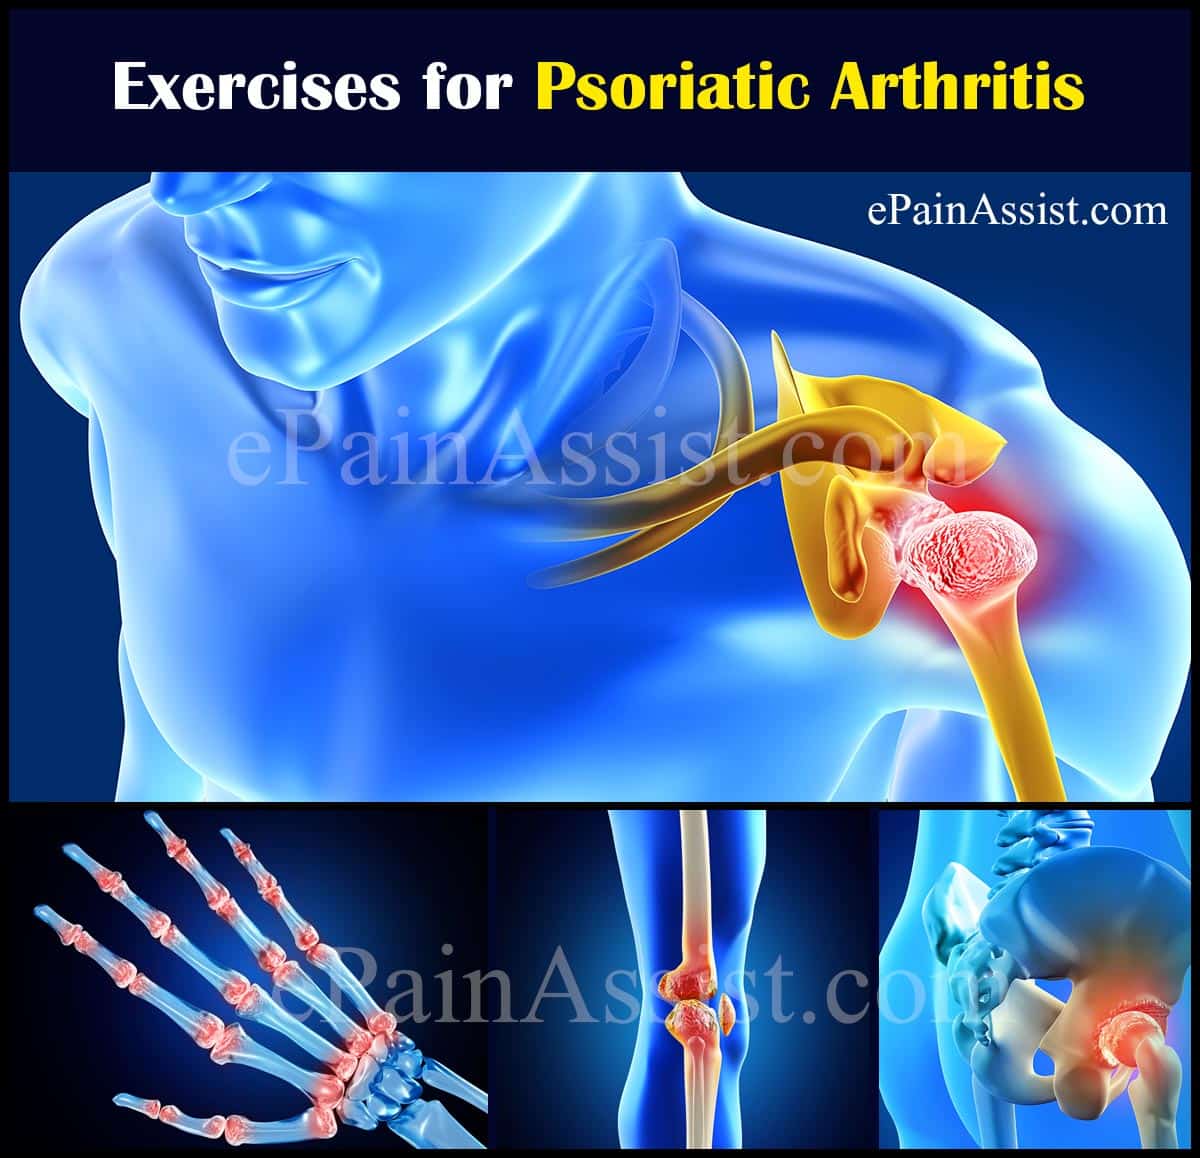 Exercises for Psoriatic Arthritis